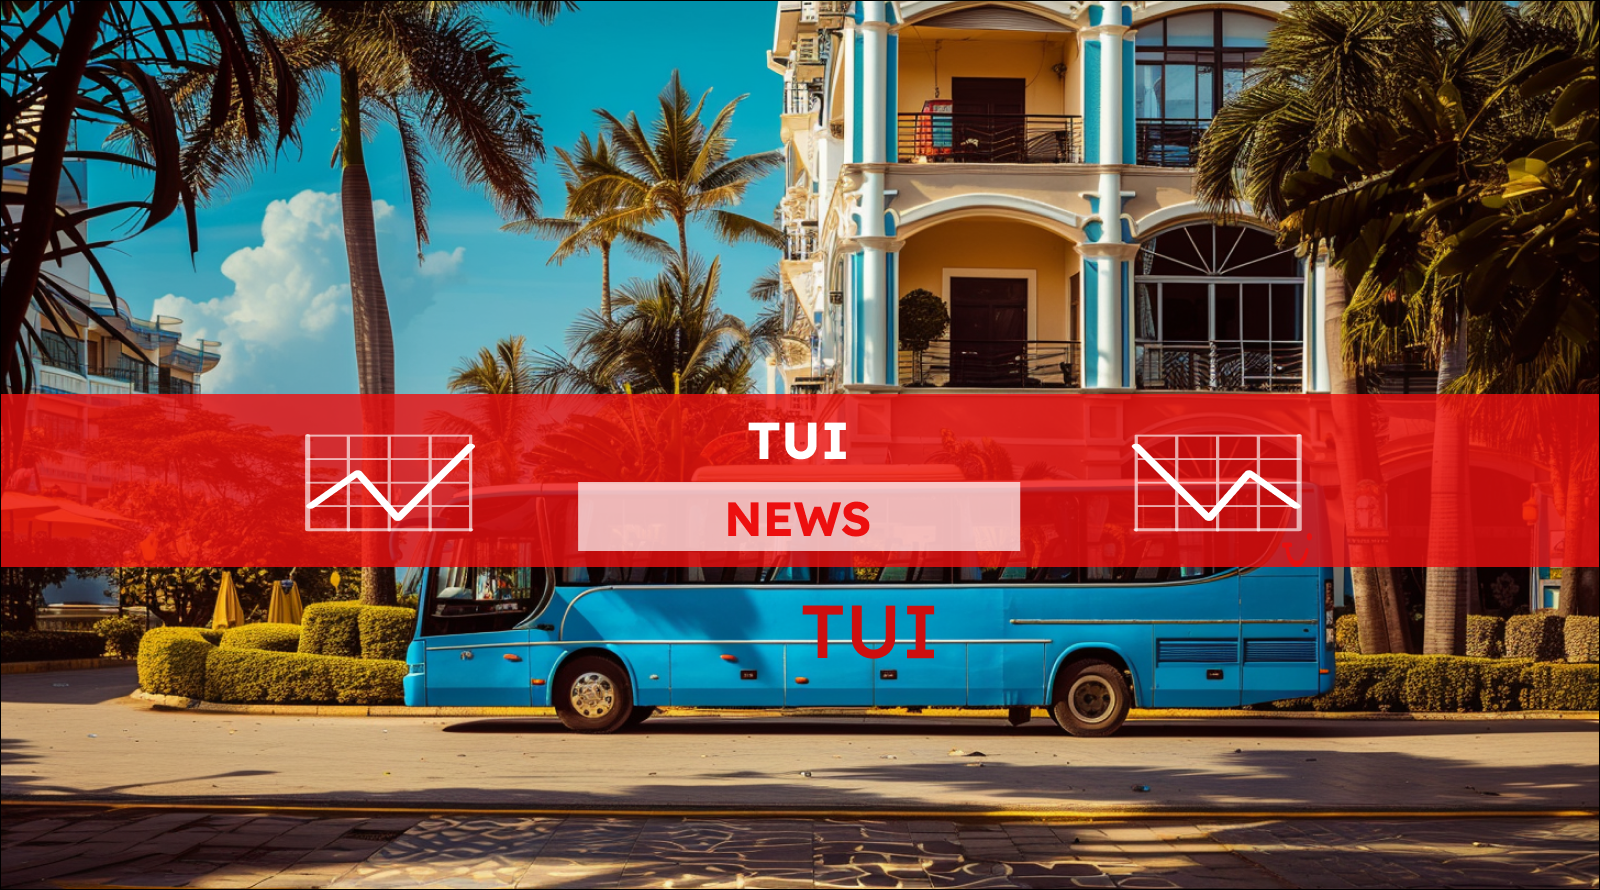 Ein Touristenbus steht in der Nähe des Hotels, mit einem TUI NEWS Banner.